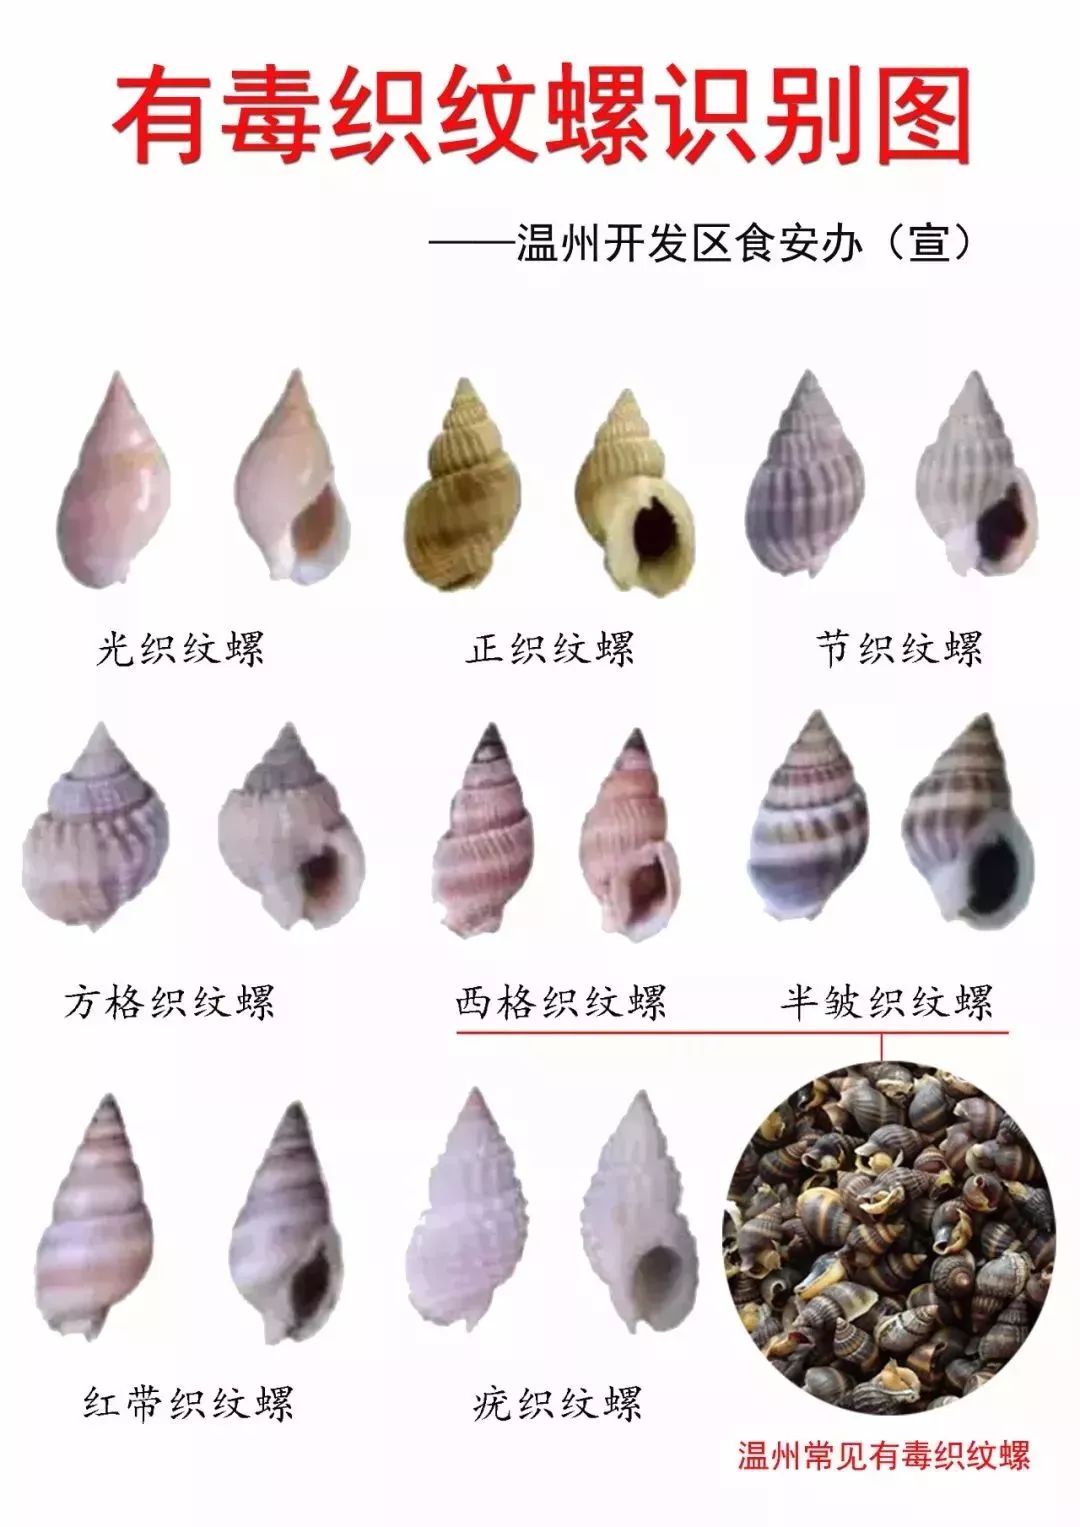 螺和节织纹螺季节性有毒的织纹螺:方格织纹螺,西格织纹螺,半褶织纹螺